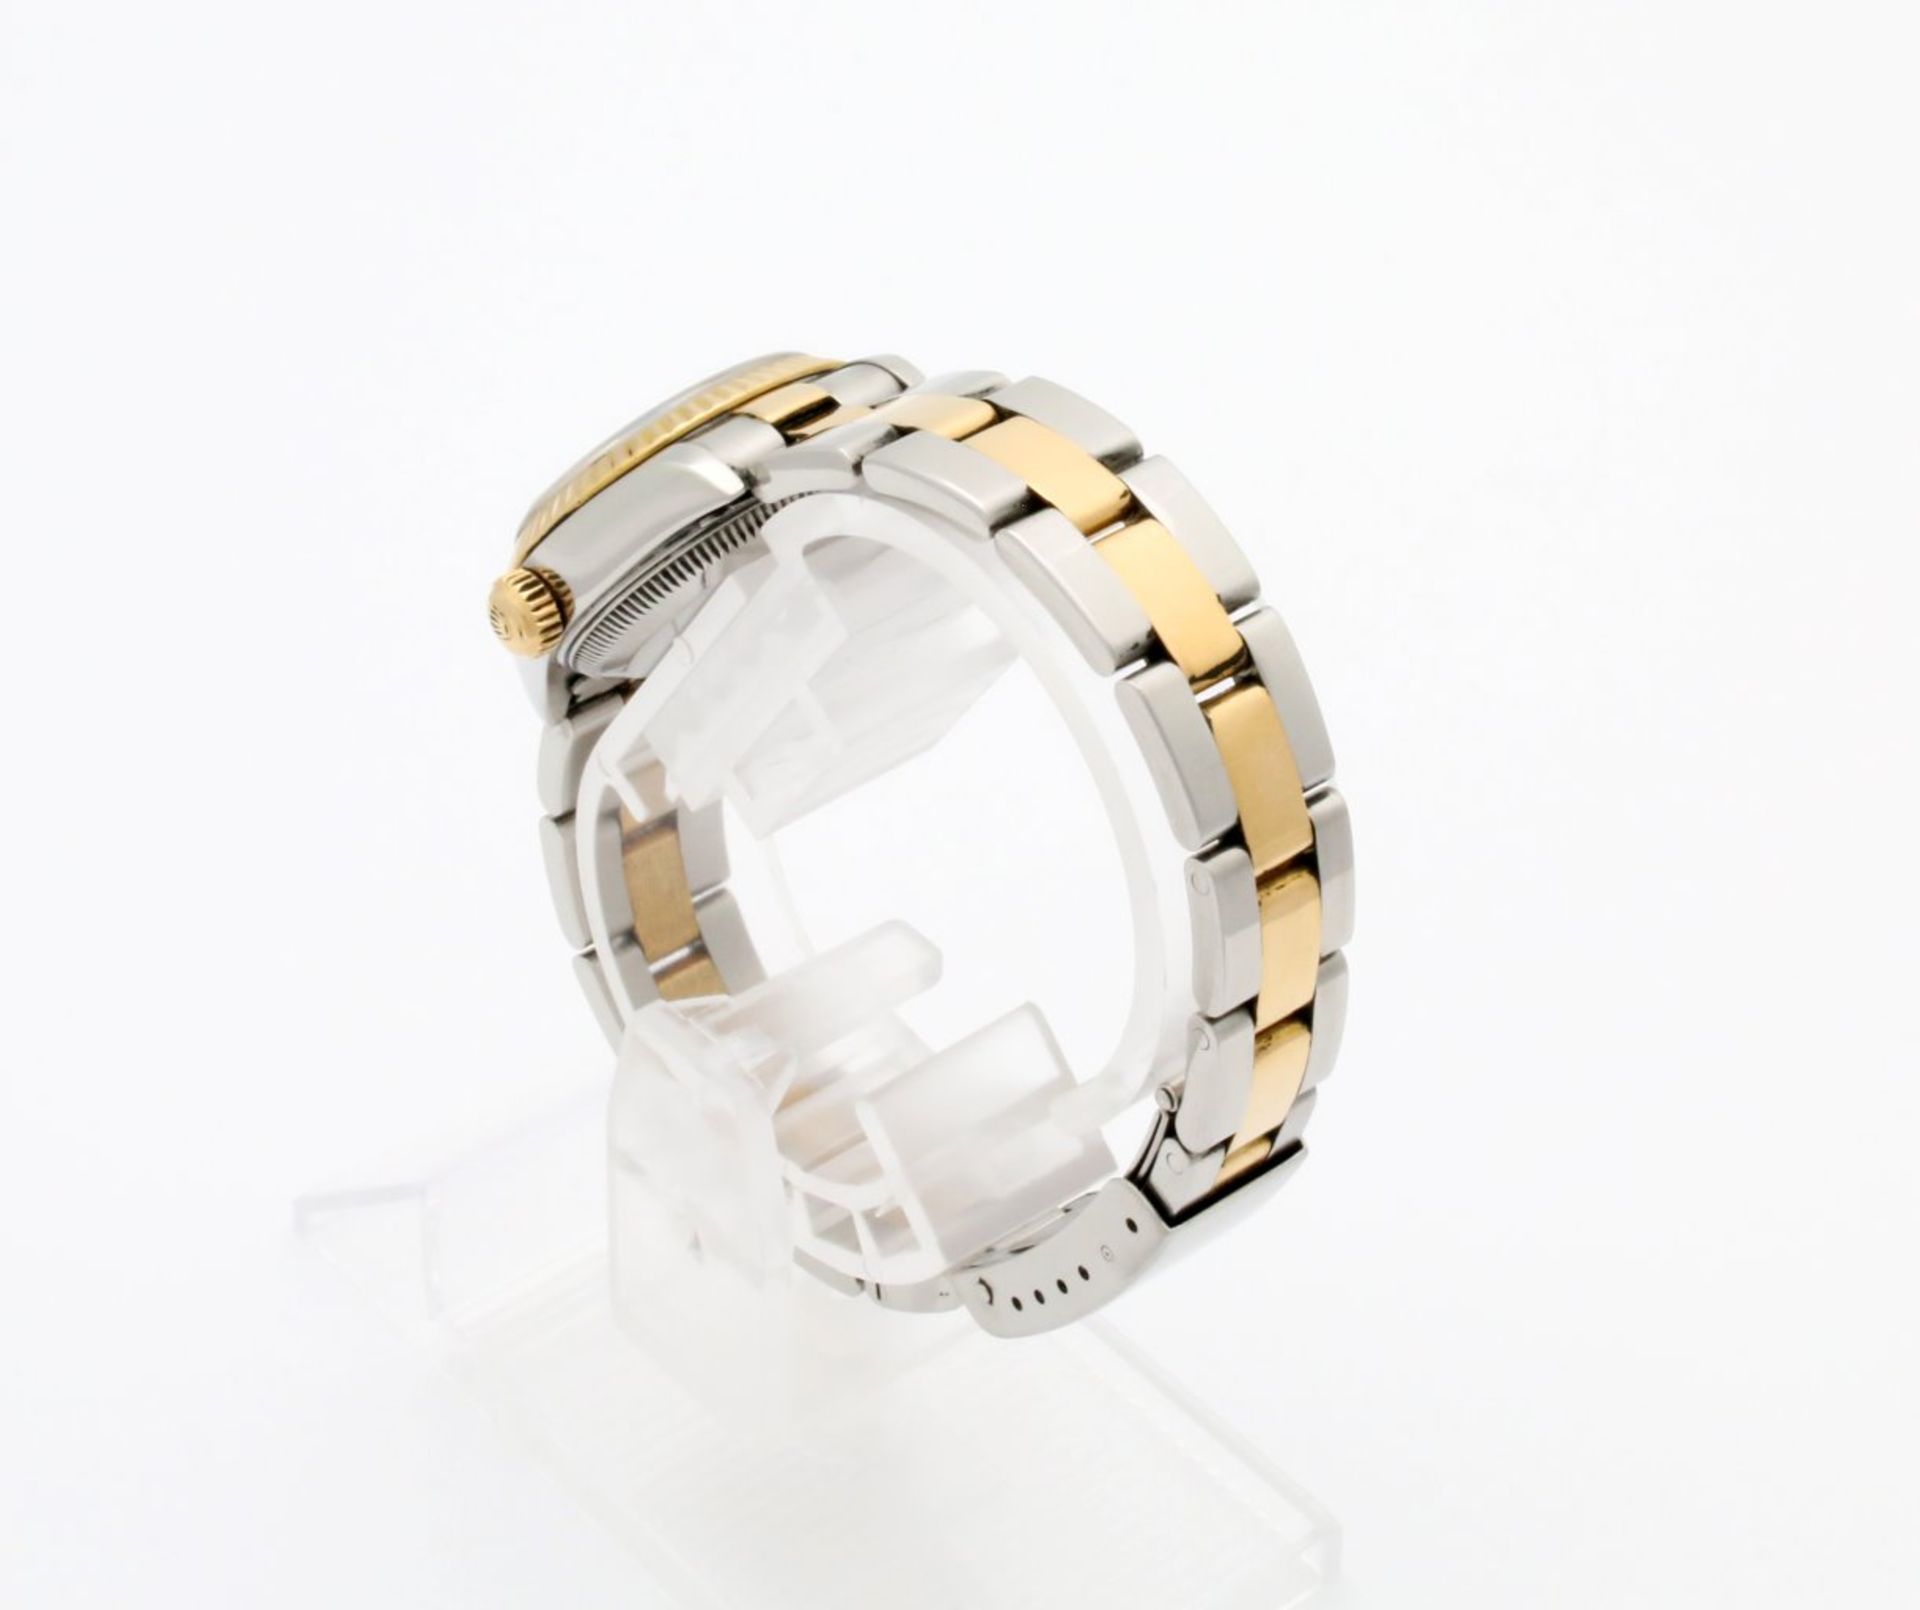 Armbanduhr Rolex Lady Datejust Stahl / Gold mit Brillanten Automatikwerk Kaliber 2135, Ref. 69173, - Bild 6 aus 8